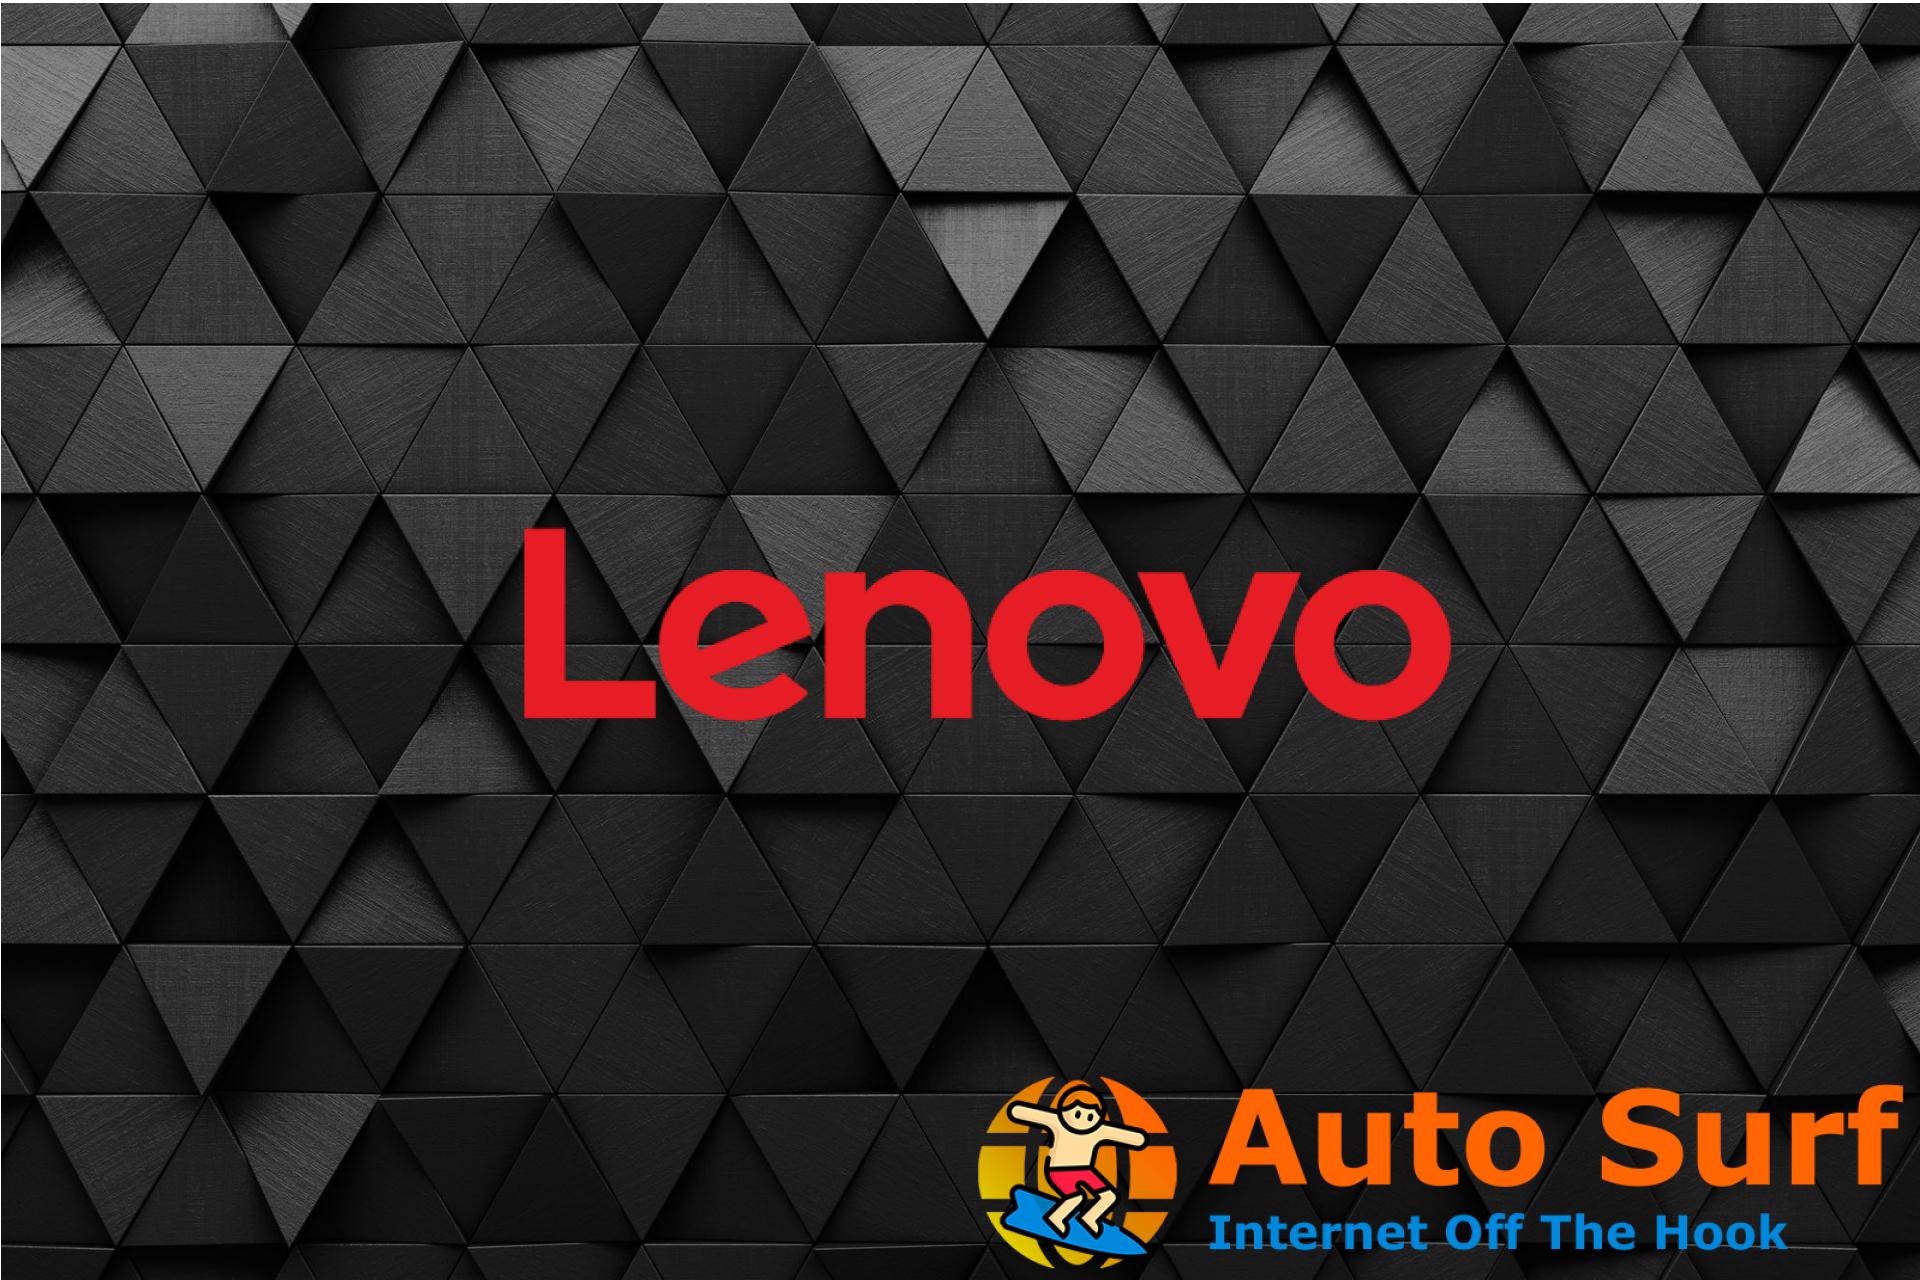 REVISIÓN: el sonido de la computadora portátil Lenovo no funciona en Windows 10/11